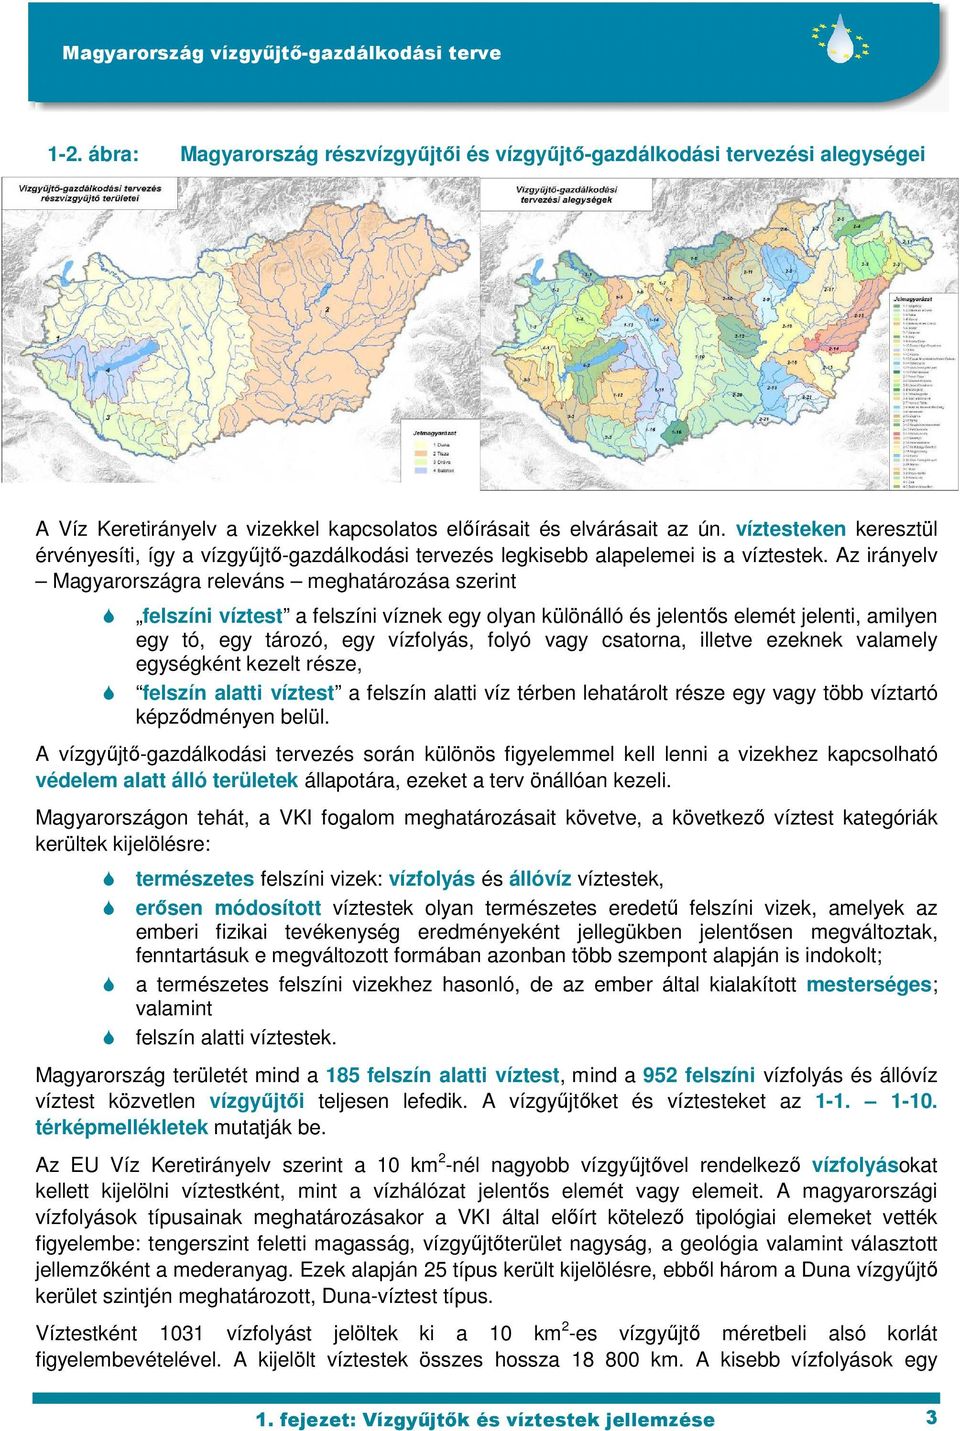 Az irányelv Magyarországra releváns meghatározása szerint felszíni víztest a felszíni víznek egy olyan különálló és jelentıs elemét jelenti, amilyen egy tó, egy tározó, egy vízfolyás, folyó vagy